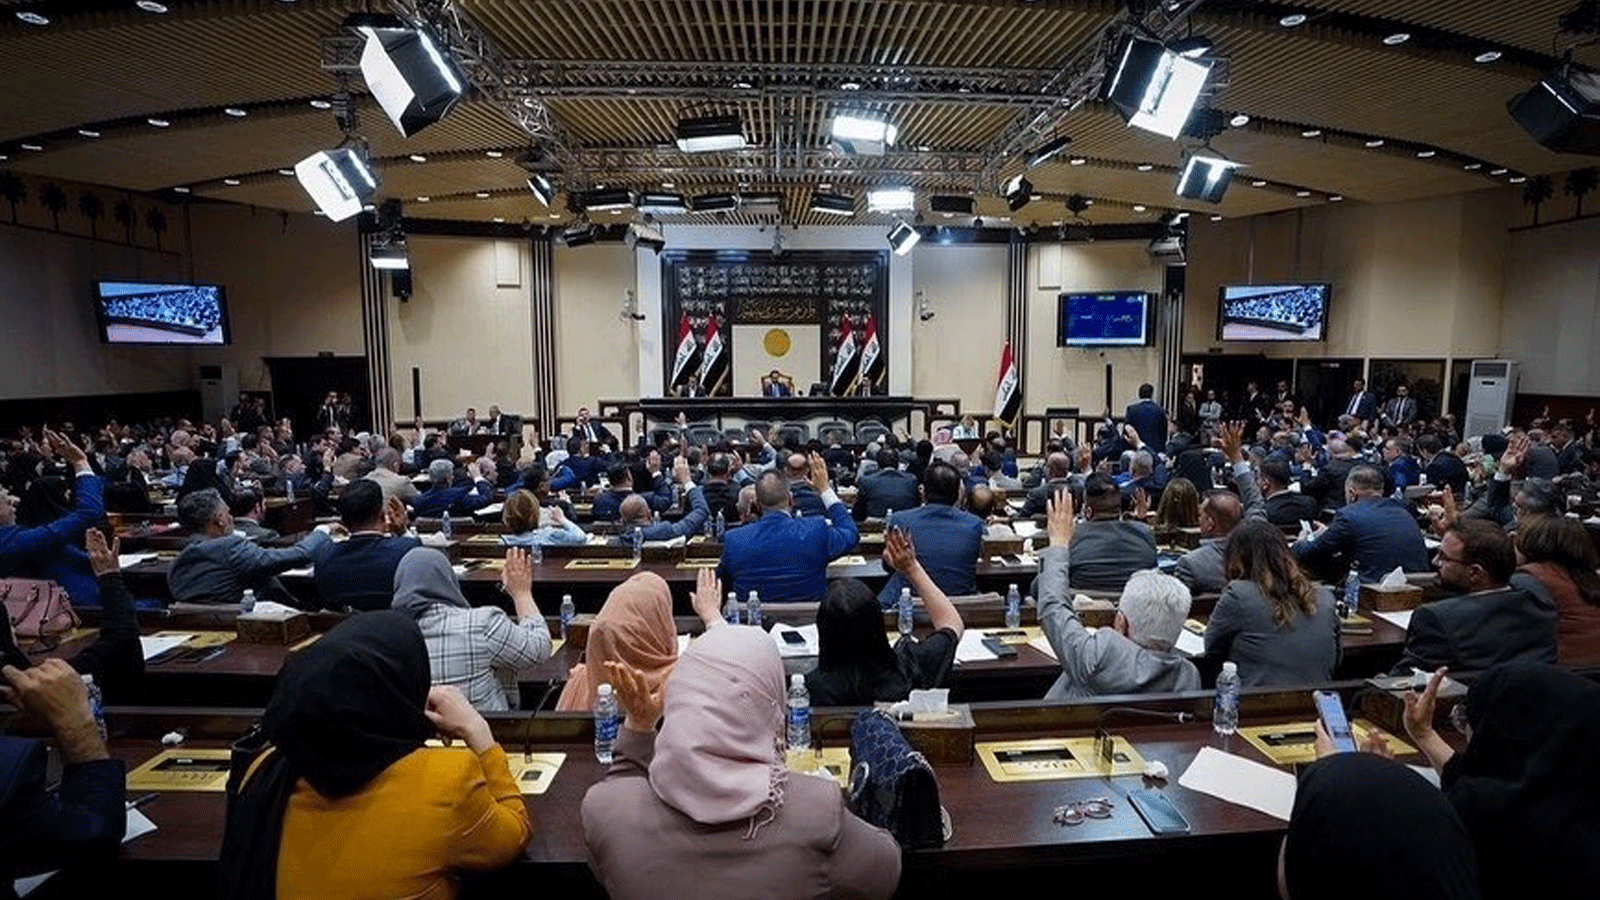 البرلمان العراقي يصوّت على أحد القوانين الجديدة.. نوابه المستقلون يستعدون غدا لاعلان مبادرتهم لانهاء الانسداد السياسي في البلاد (اعلام البرلمان)